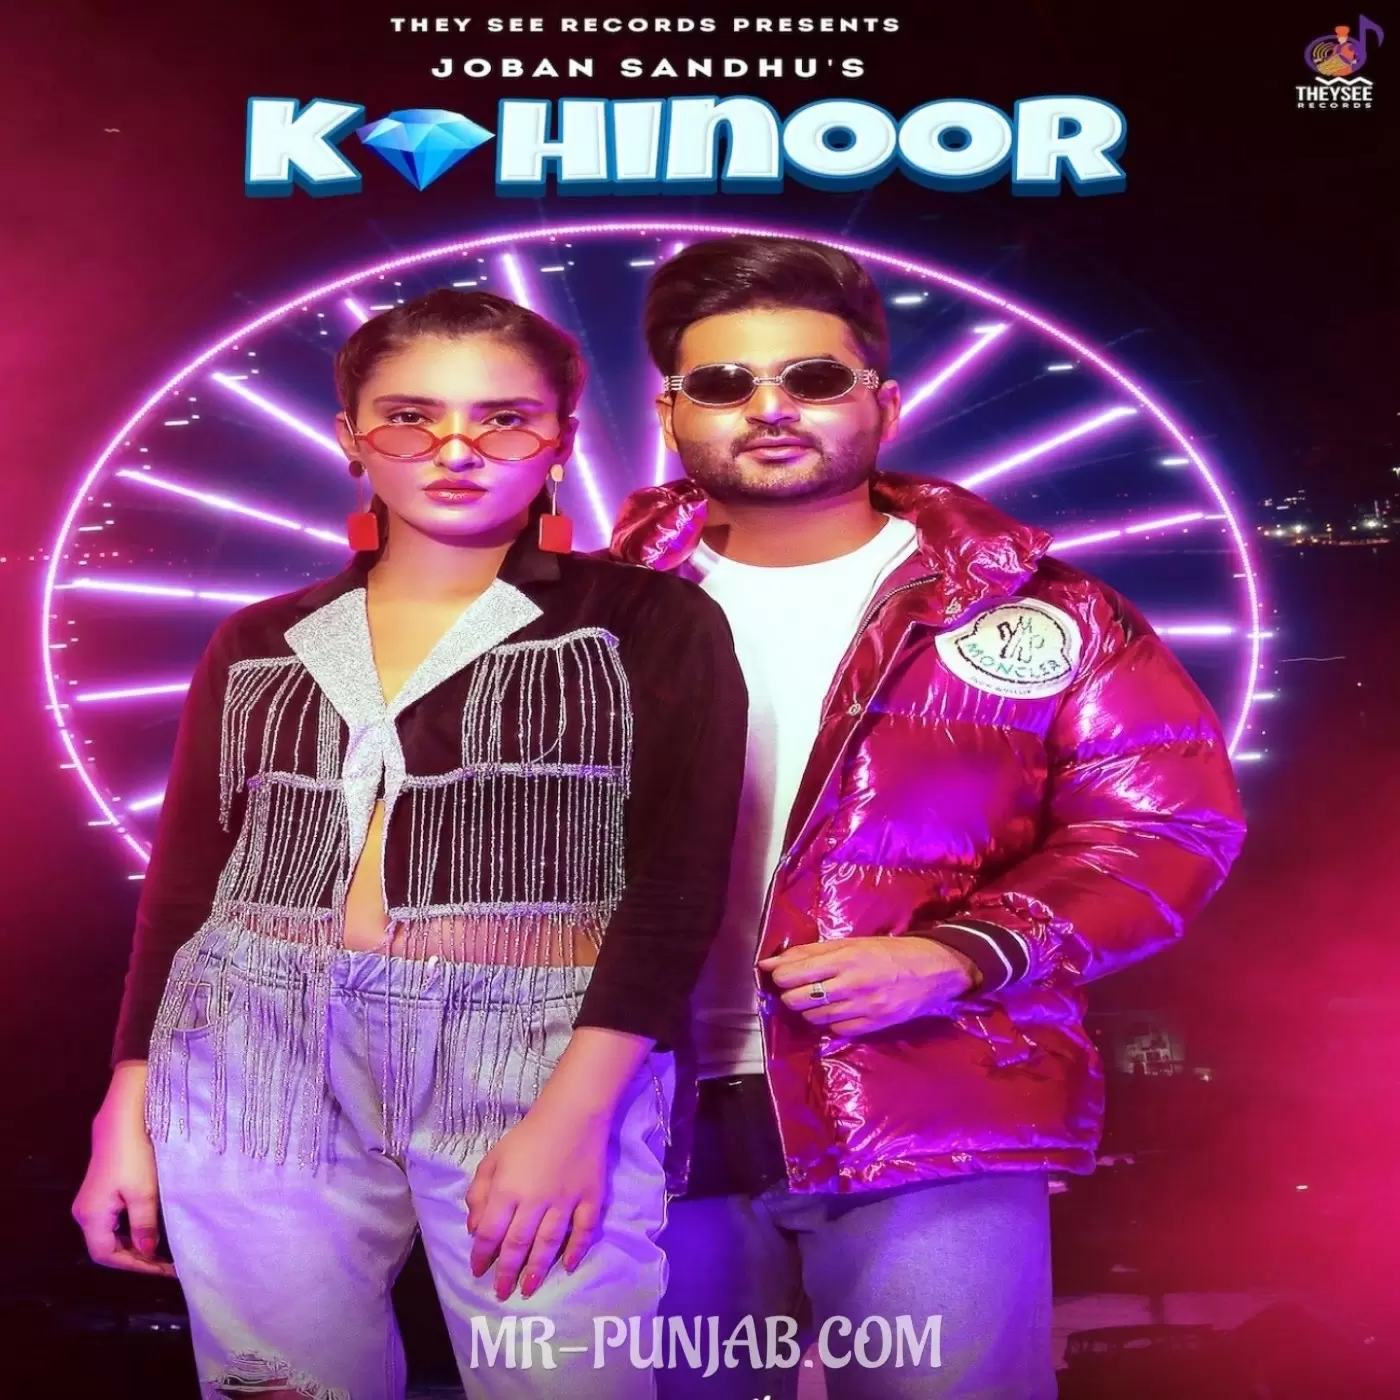 Kohinoor Joban Sandhu Mp3 Download Song - Mr-Punjab